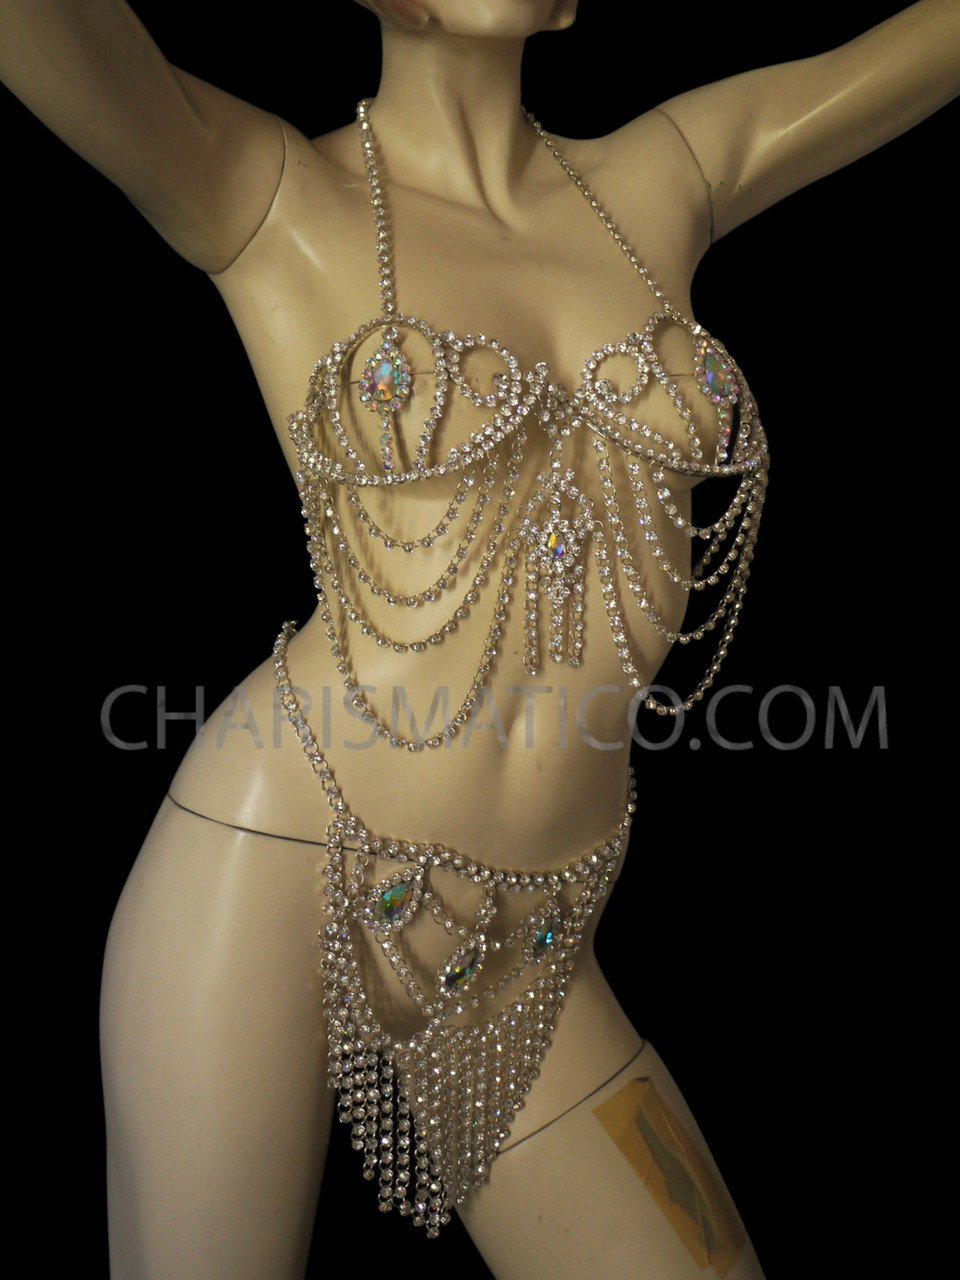 Body Festival Rhinestone Charming Women Sexy Crystal Jewelry Bra